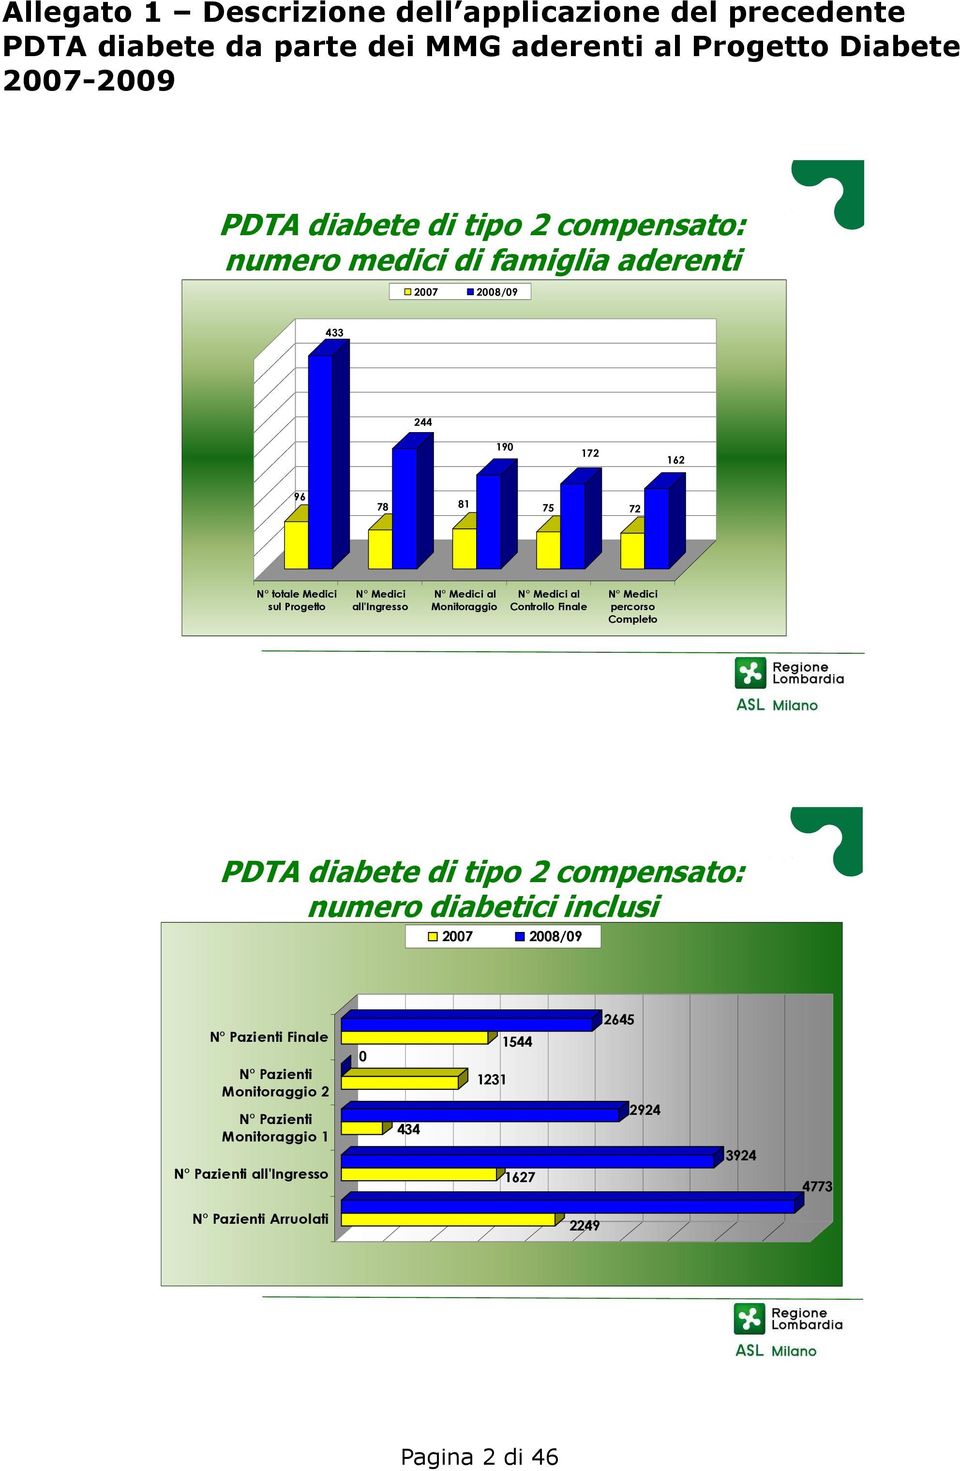 N Medici al Monitoraggio N Medici al Controllo Finale N Medici percorso Completo PDTA diabete di tipo 2 compensato: numero diabetici inclusi 2007 2008/09 N